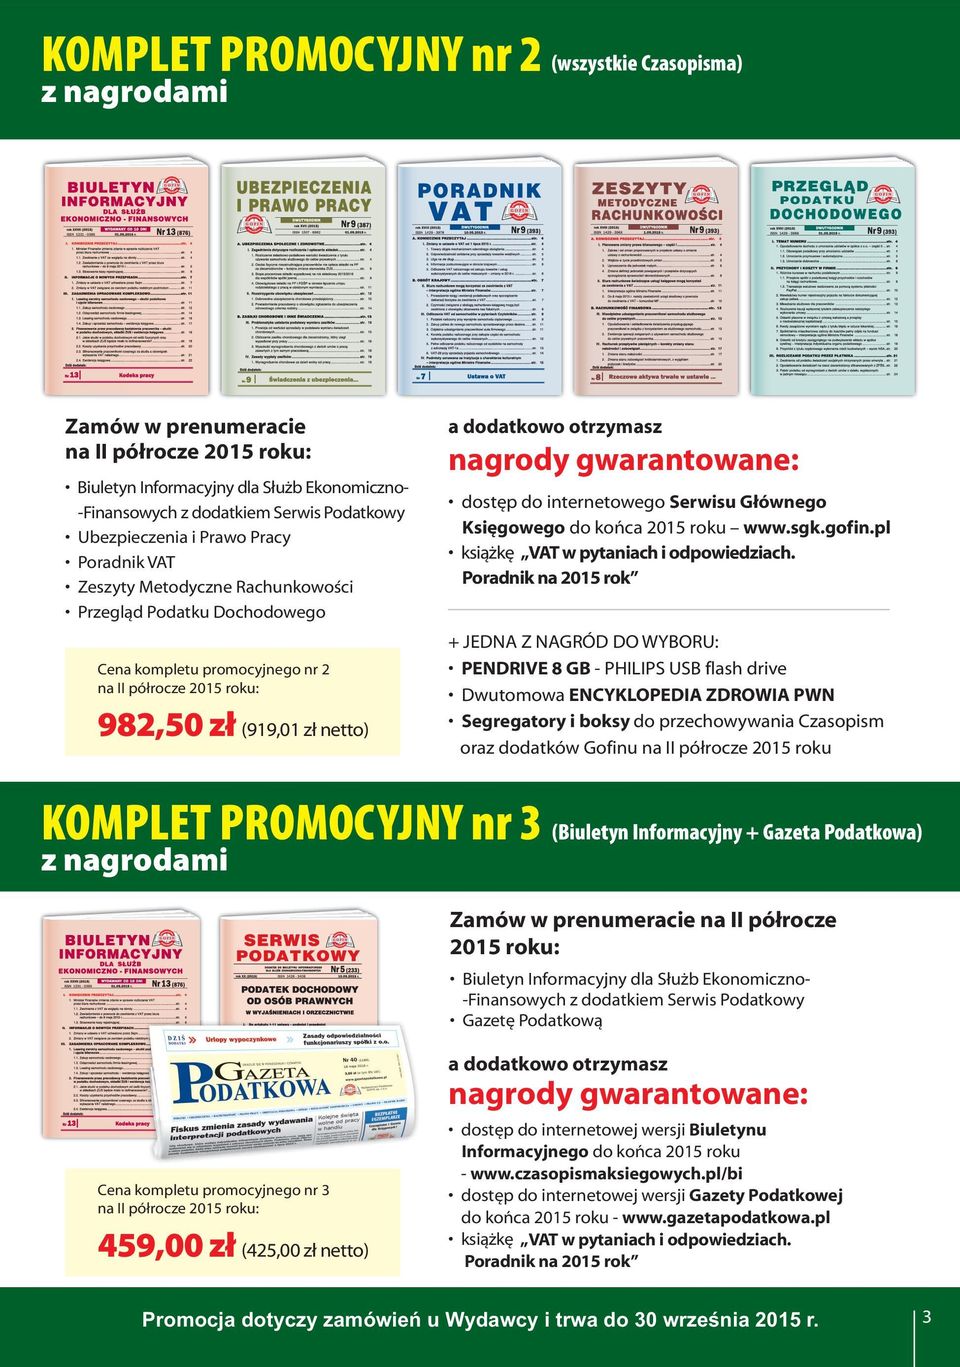 Serwisu Głównego Księgowego do końca 2015 roku www.sgk.gofin.pl książkę VAT w pytaniach i odpowiedziach.